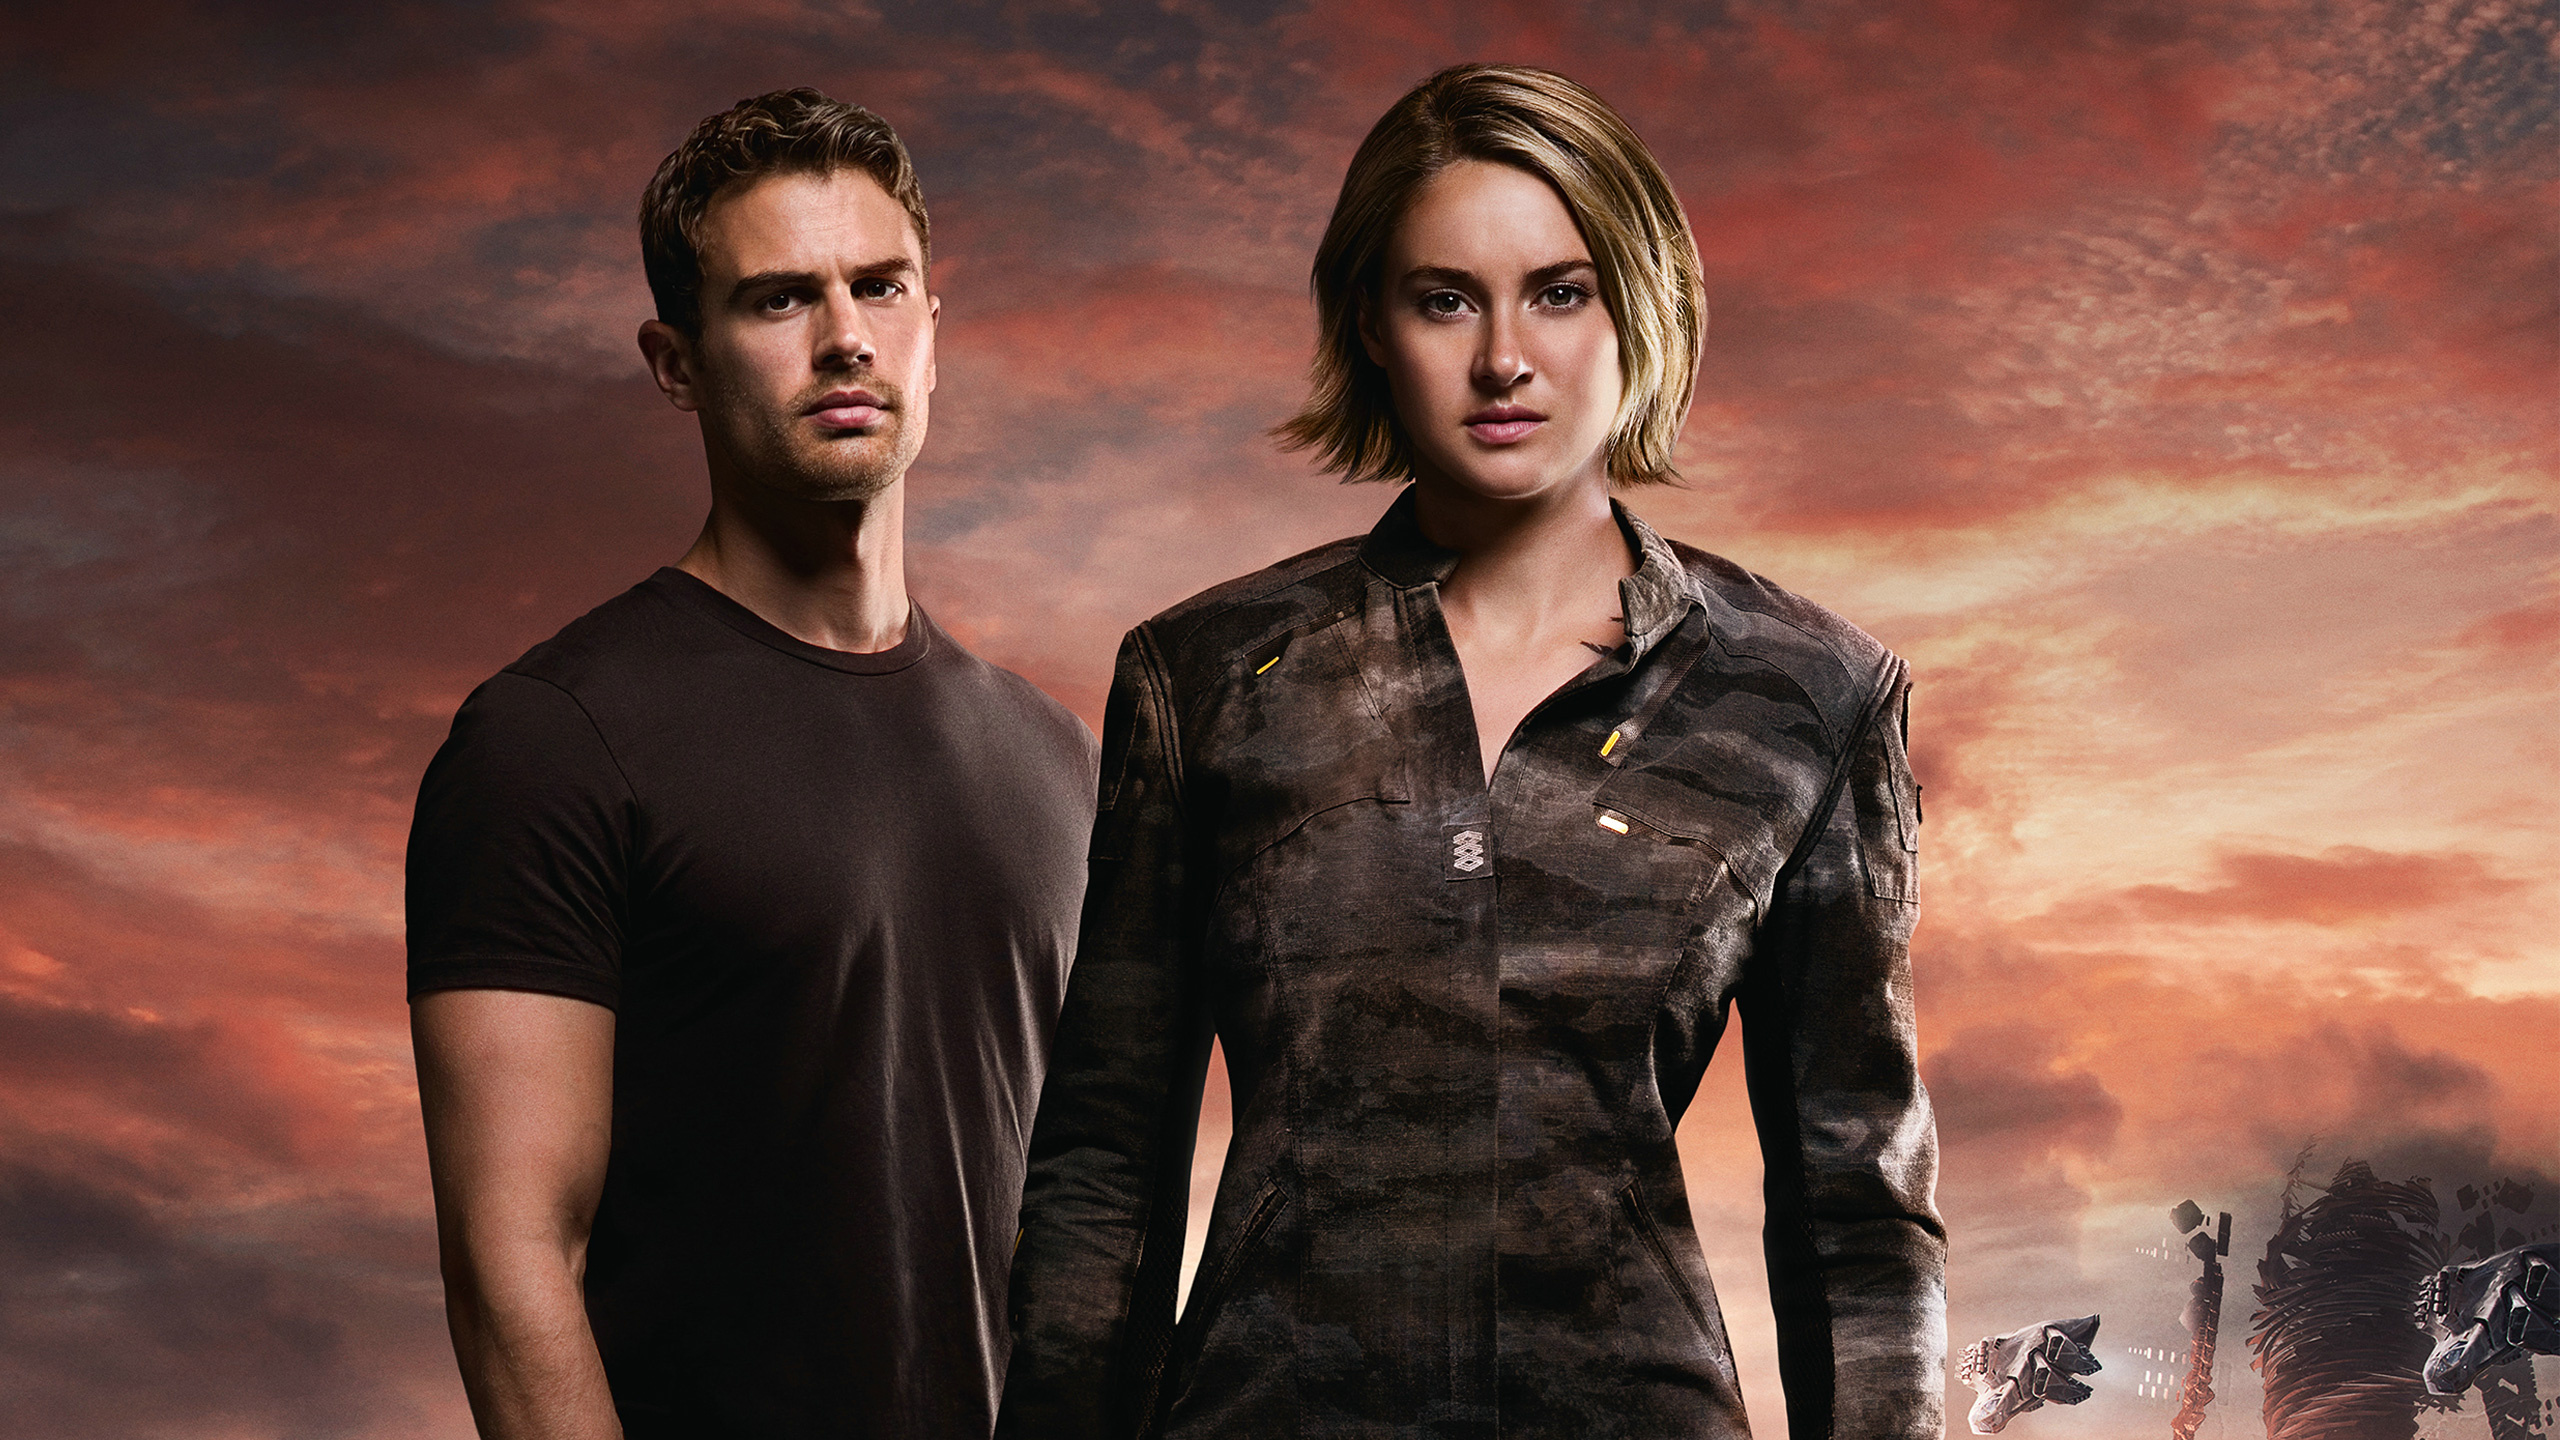 Four and Tris, Divergent movie, Allegiant wallpaper, Tris and Four, 2560x1440 HD Desktop